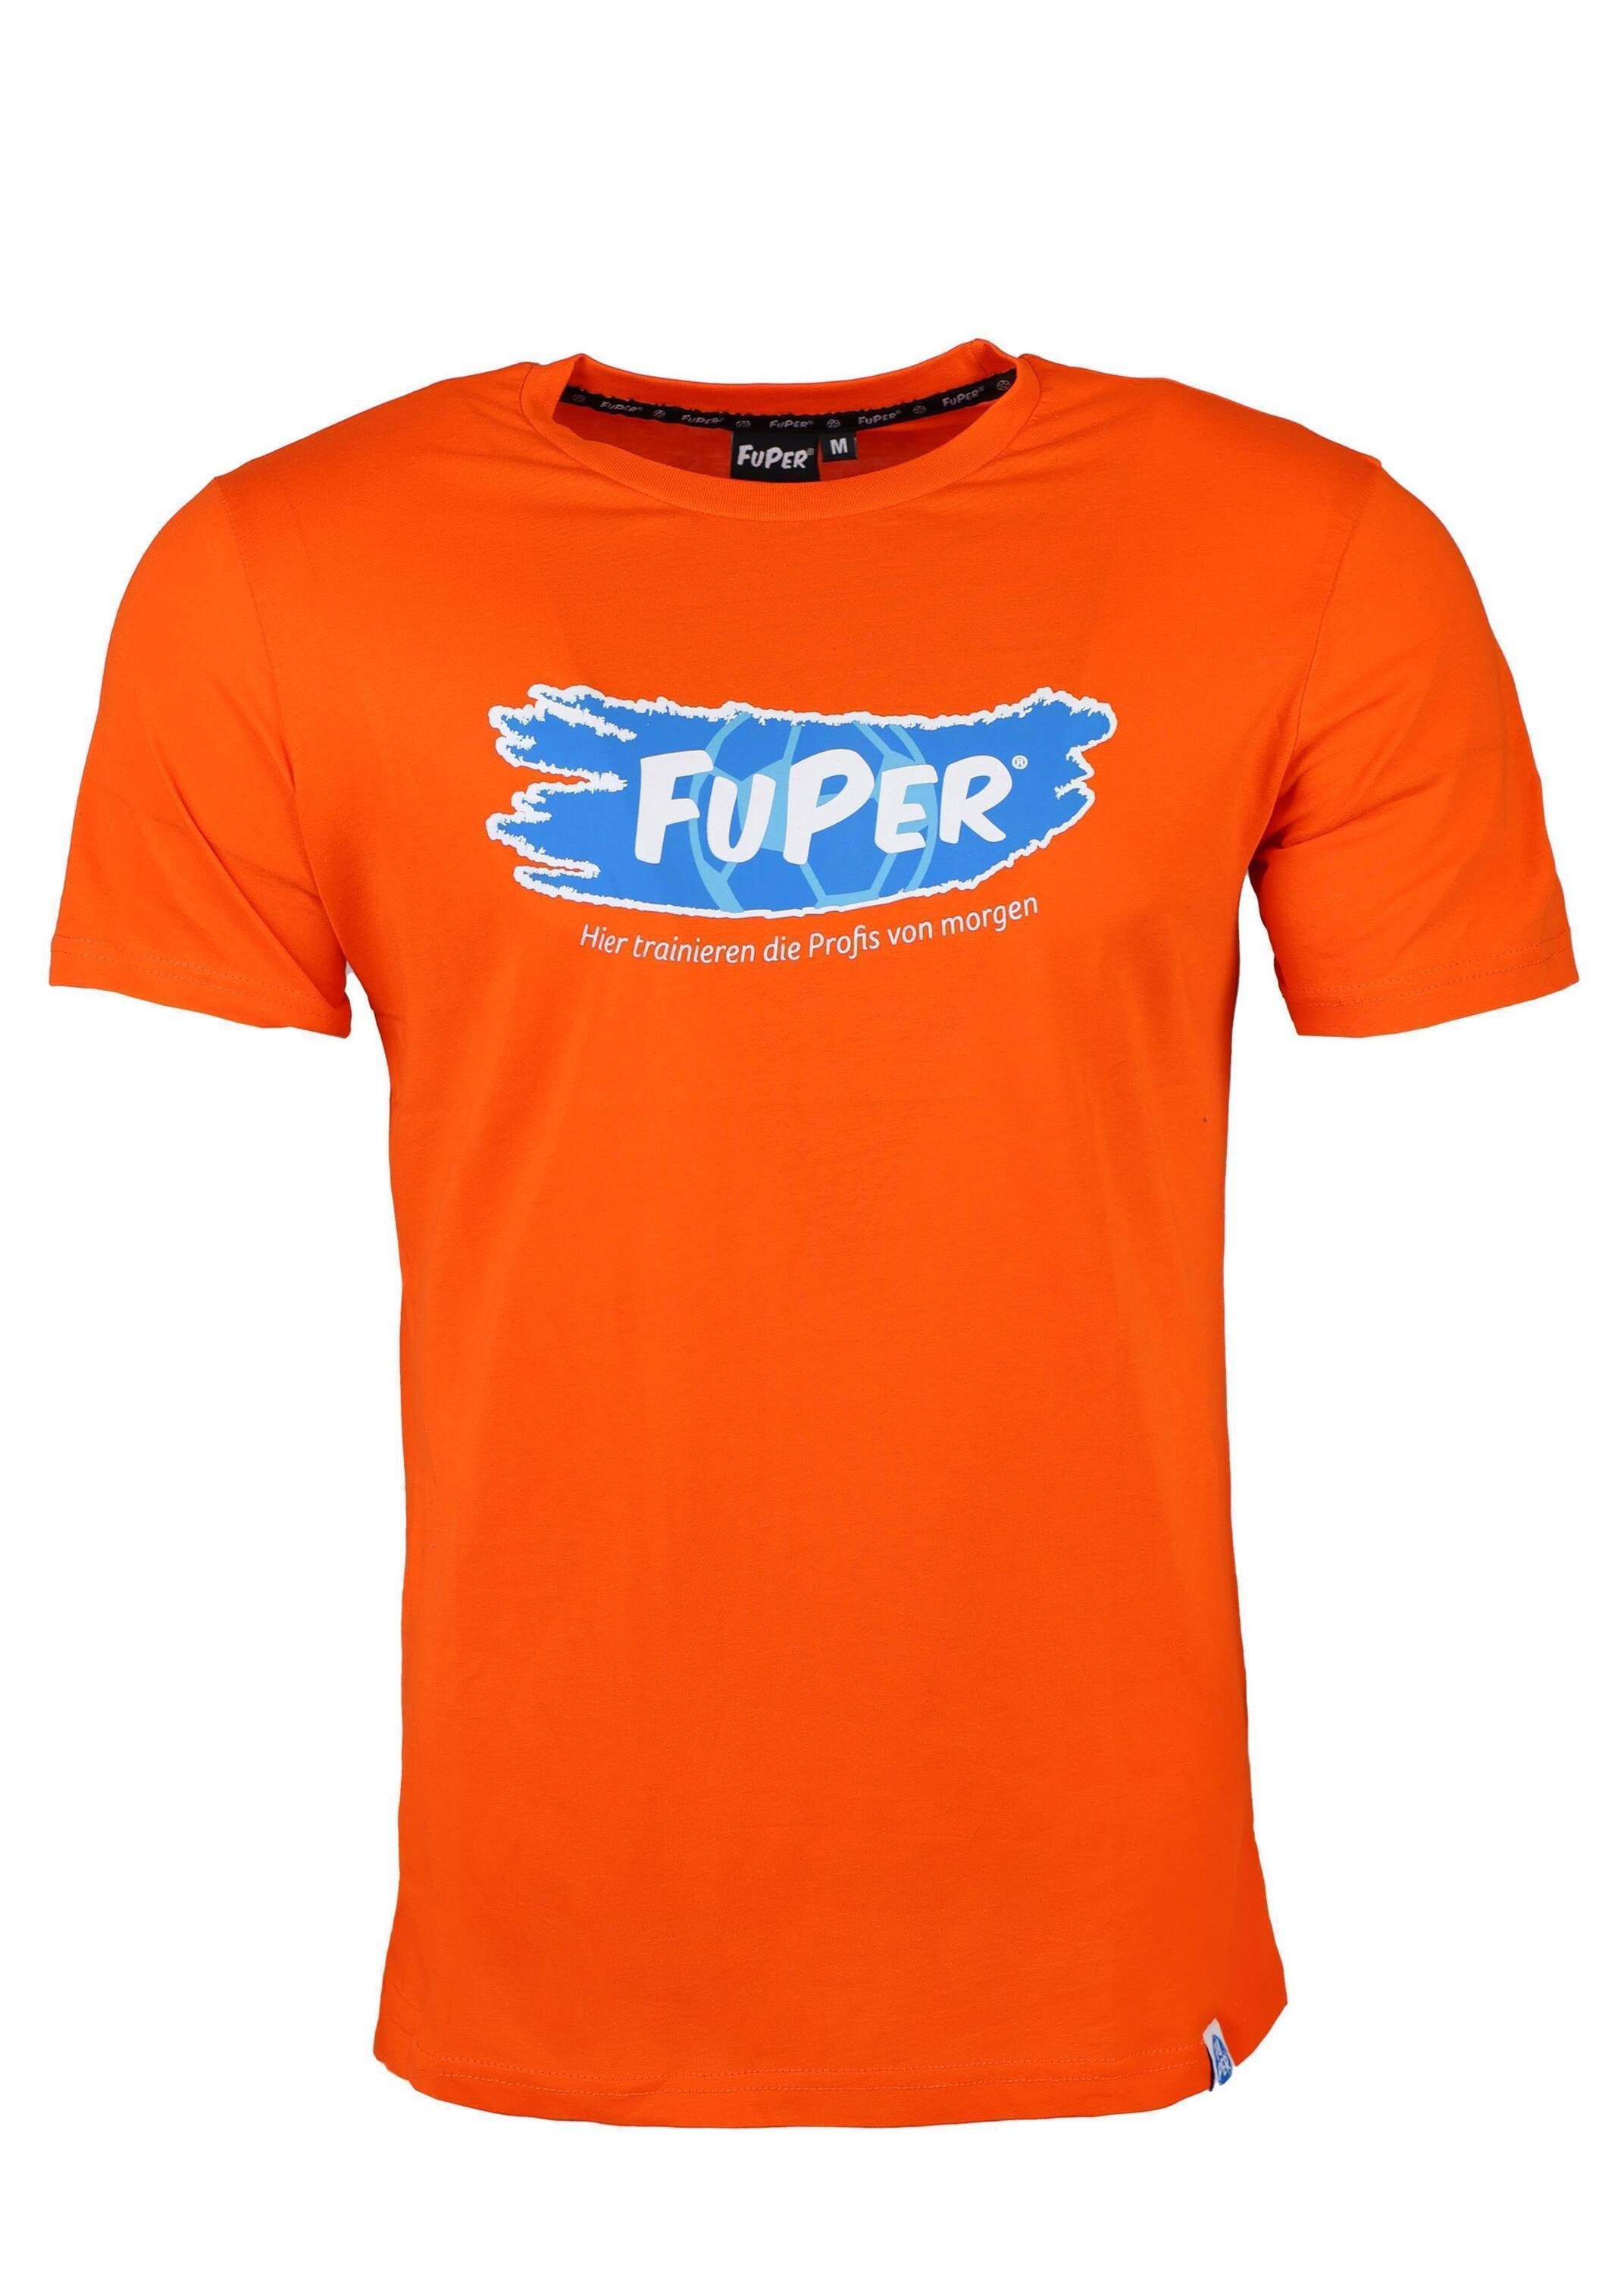 T-Shirt aus FuPer für Kinder, Orange Baumwolle, Fußball, Tarik Jugend